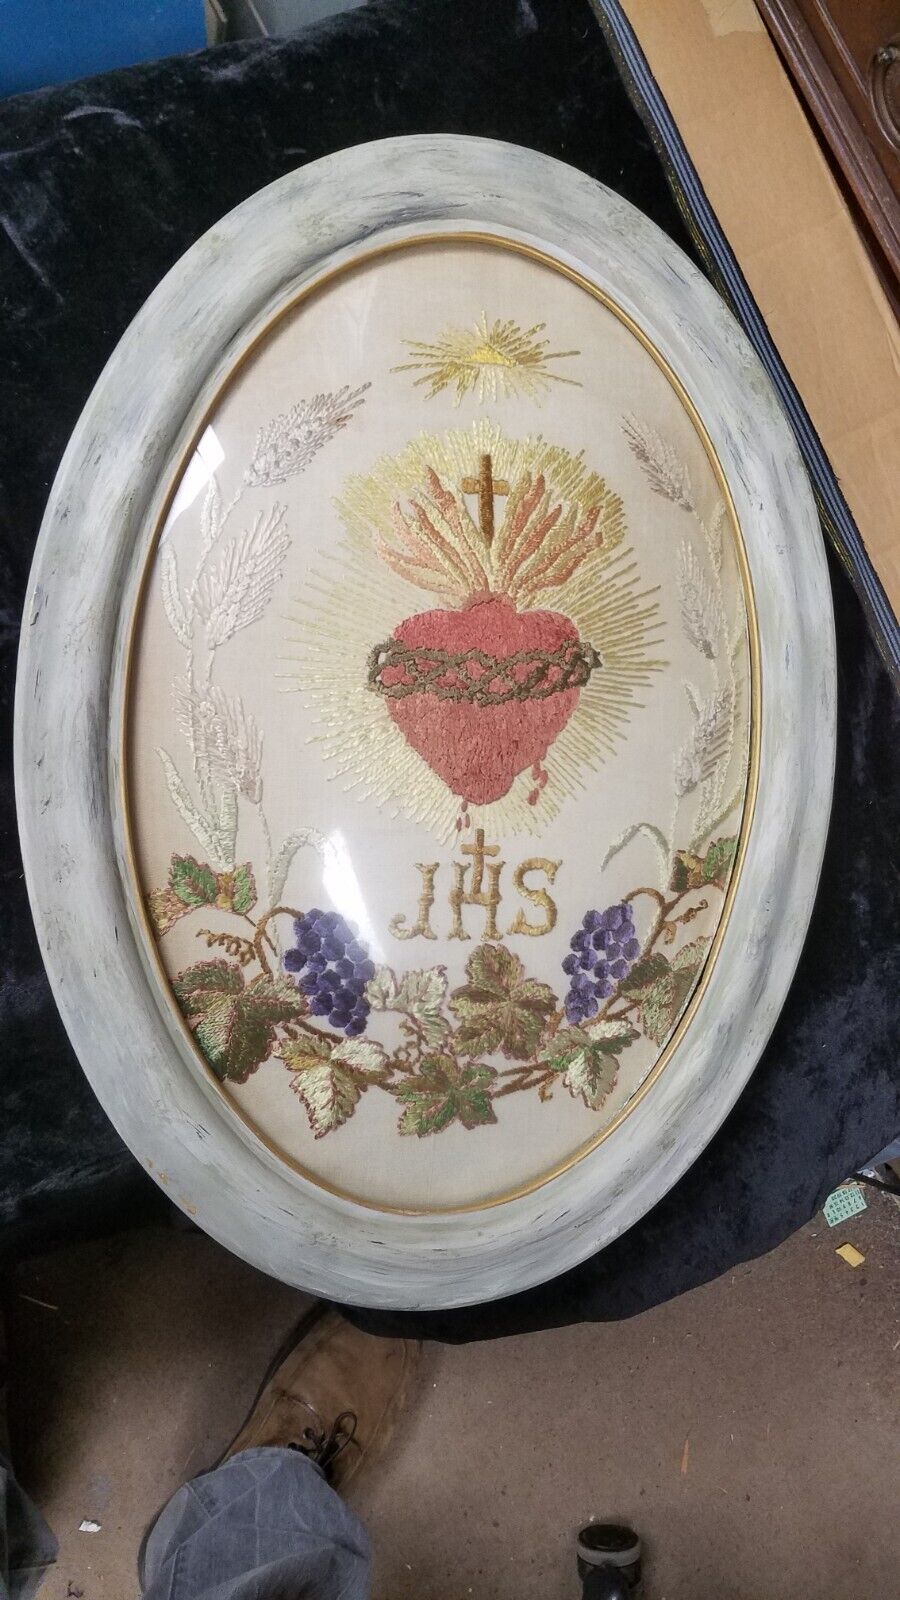 Vintage JHS Jesus Savior of Mankind Oval Framed Embroidered Christian Design